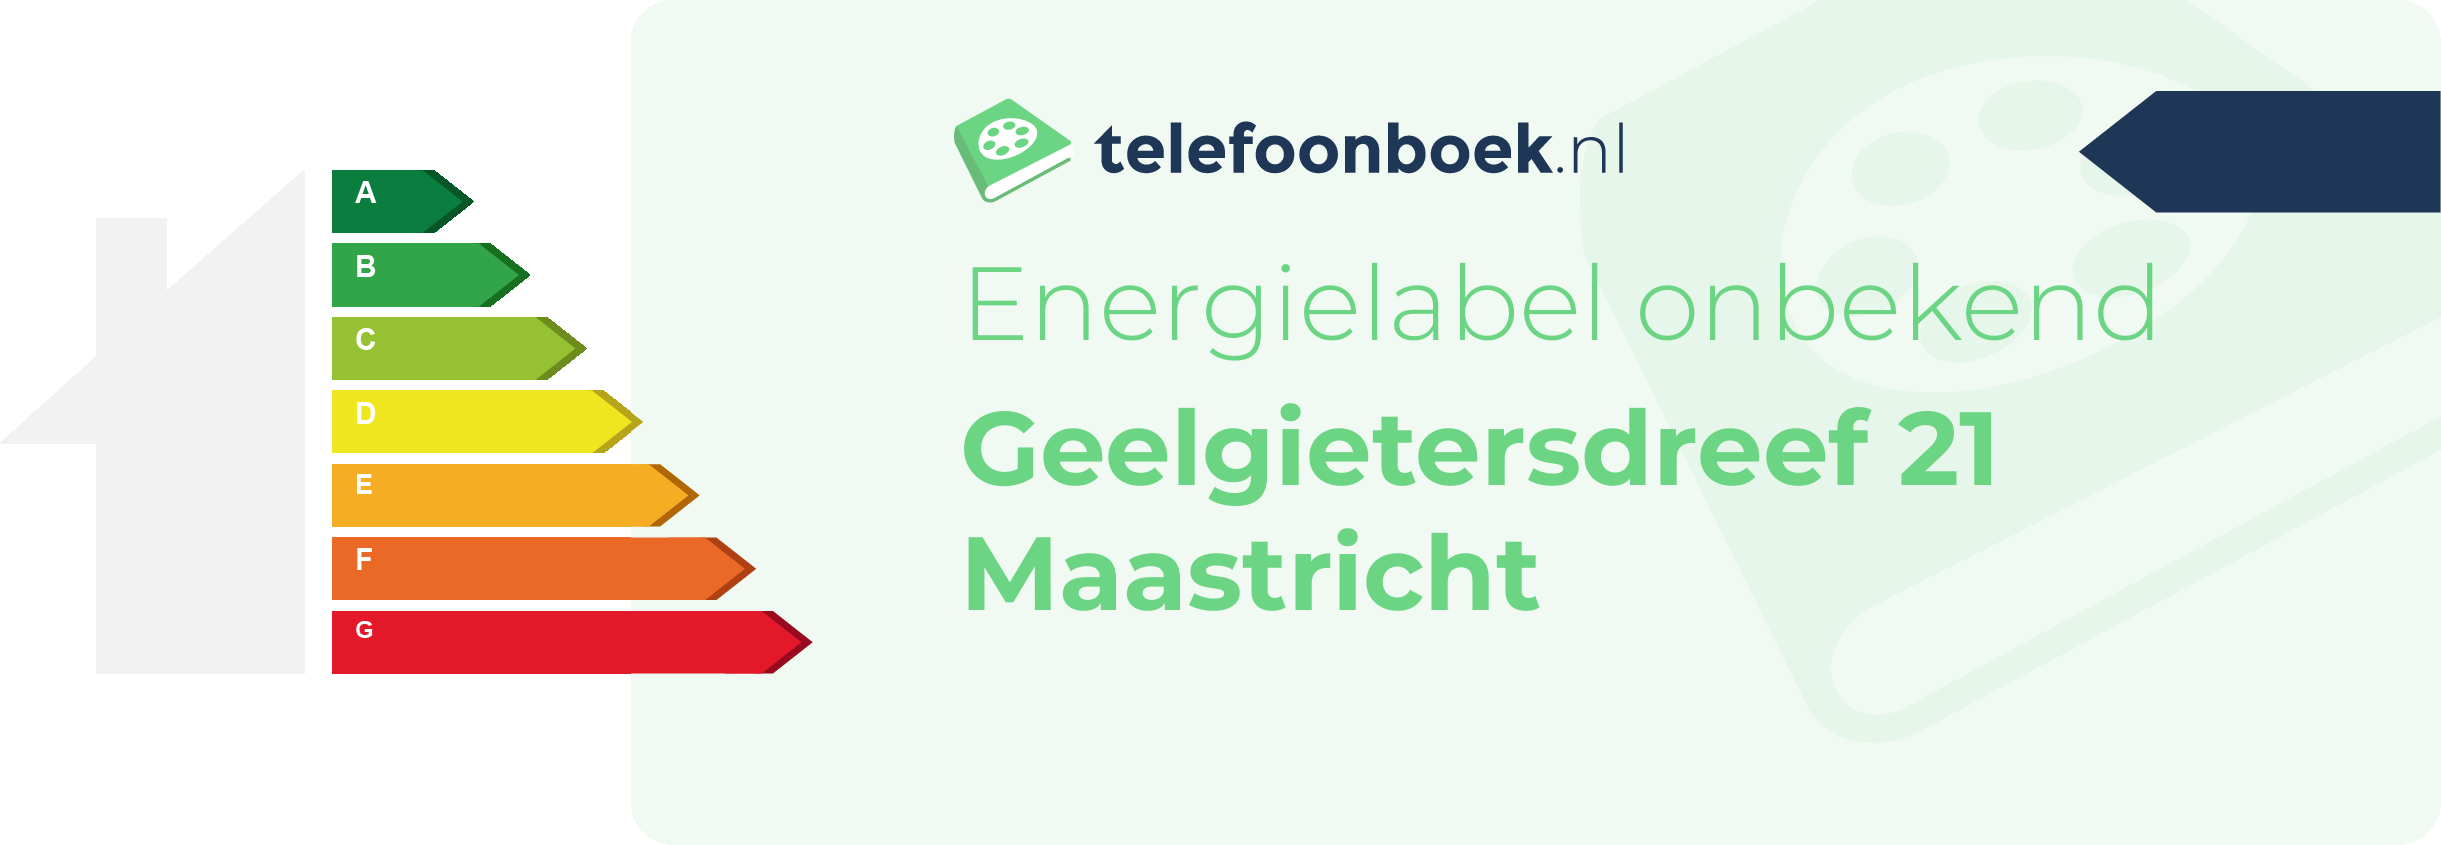 Energielabel Geelgietersdreef 21 Maastricht